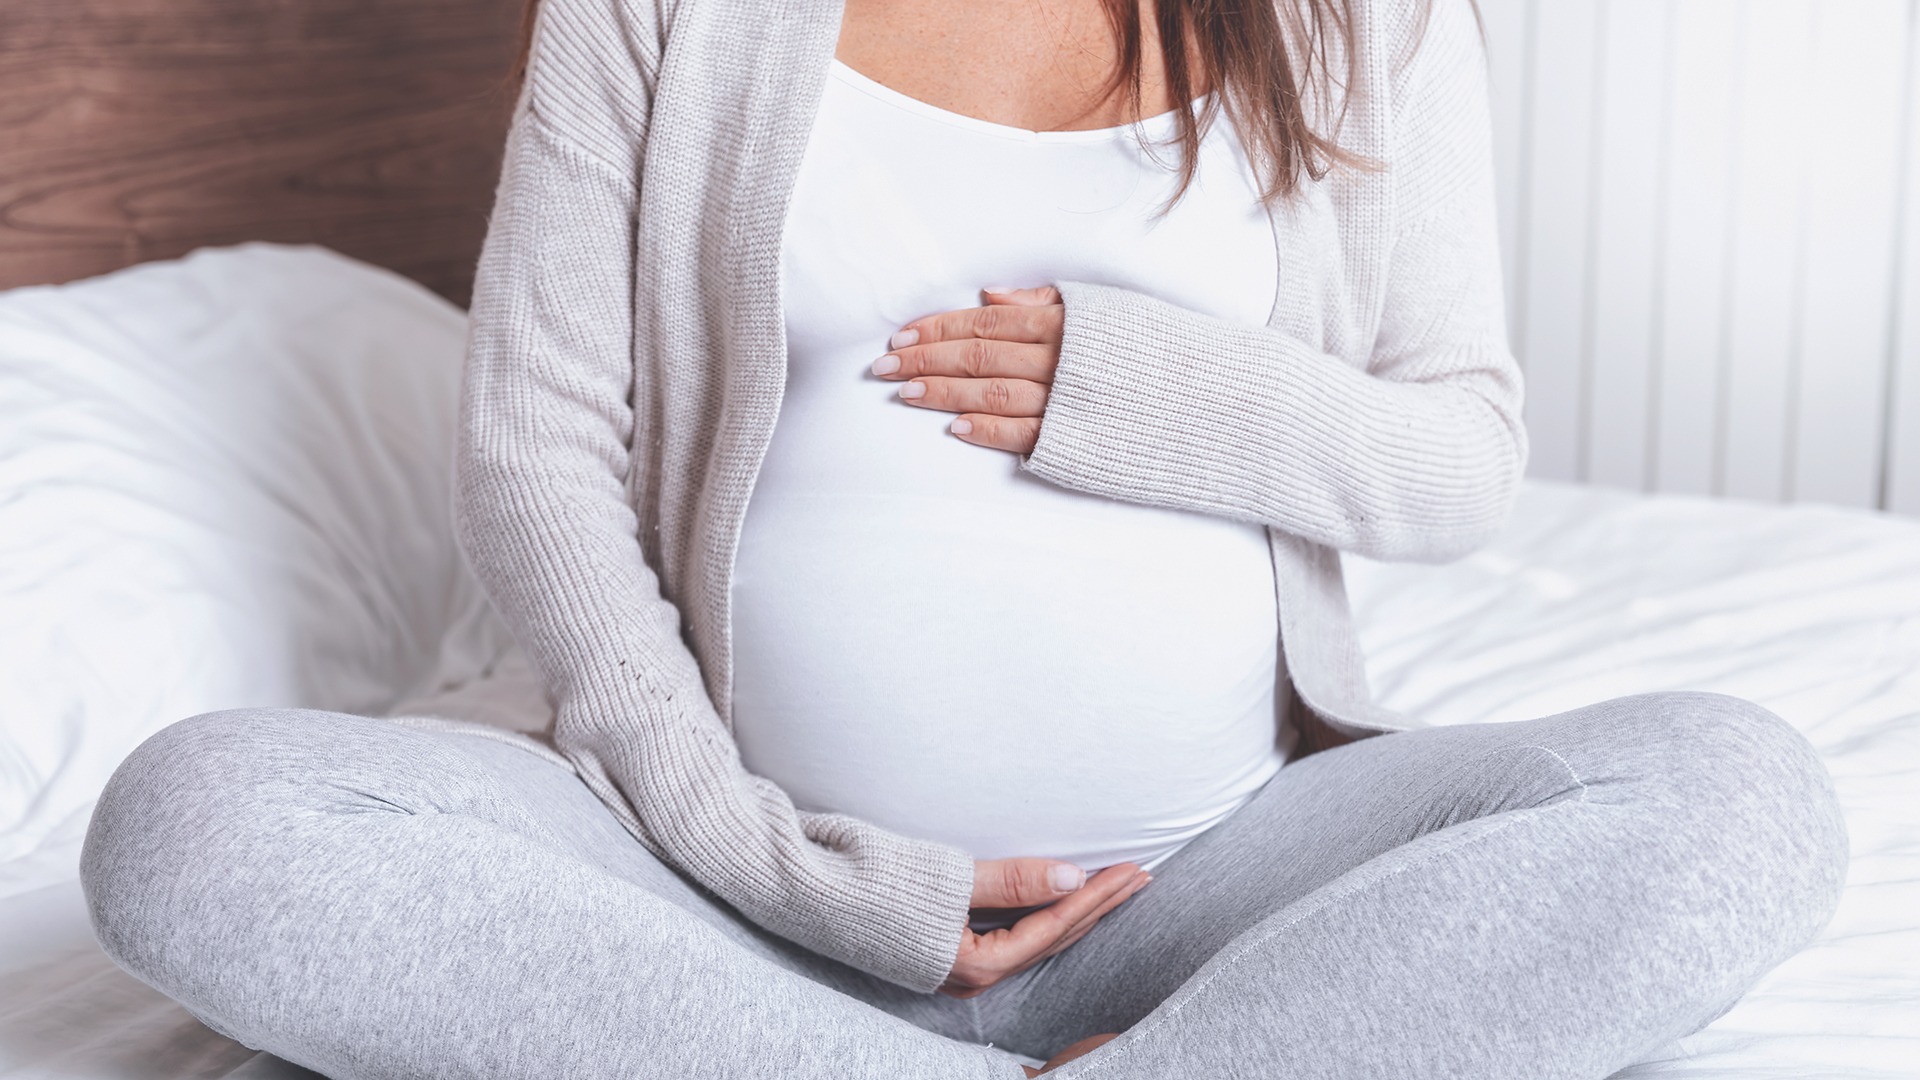 Székrekedés terhesség alatt